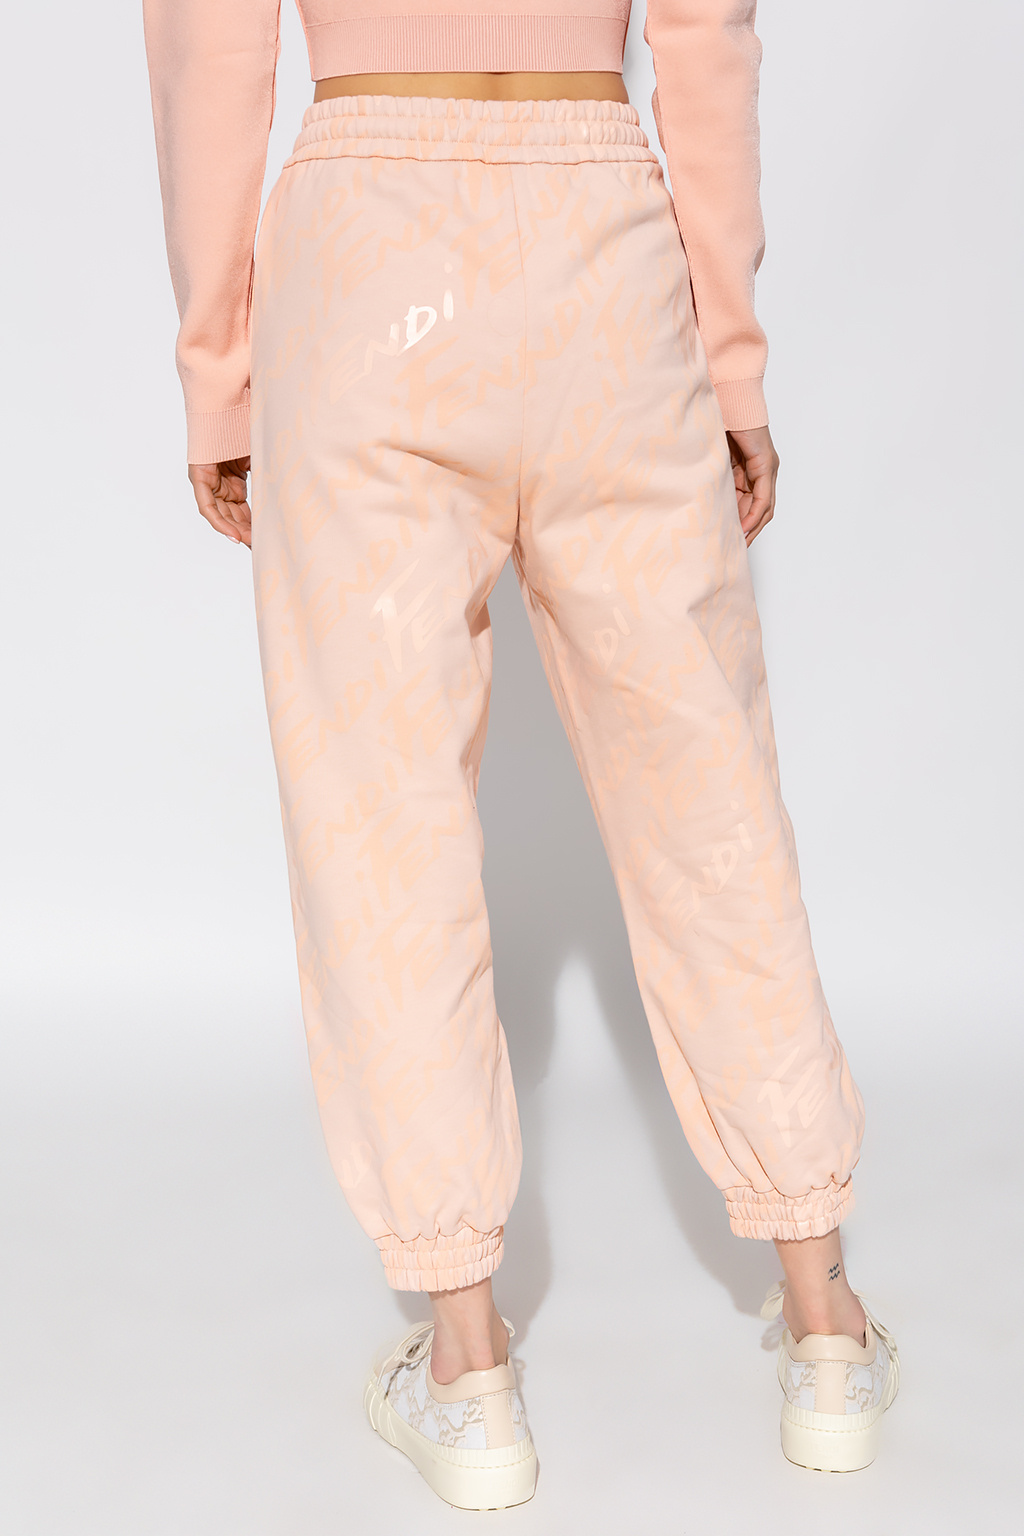 Fendi Sweatpants with Fendi Brush pattern